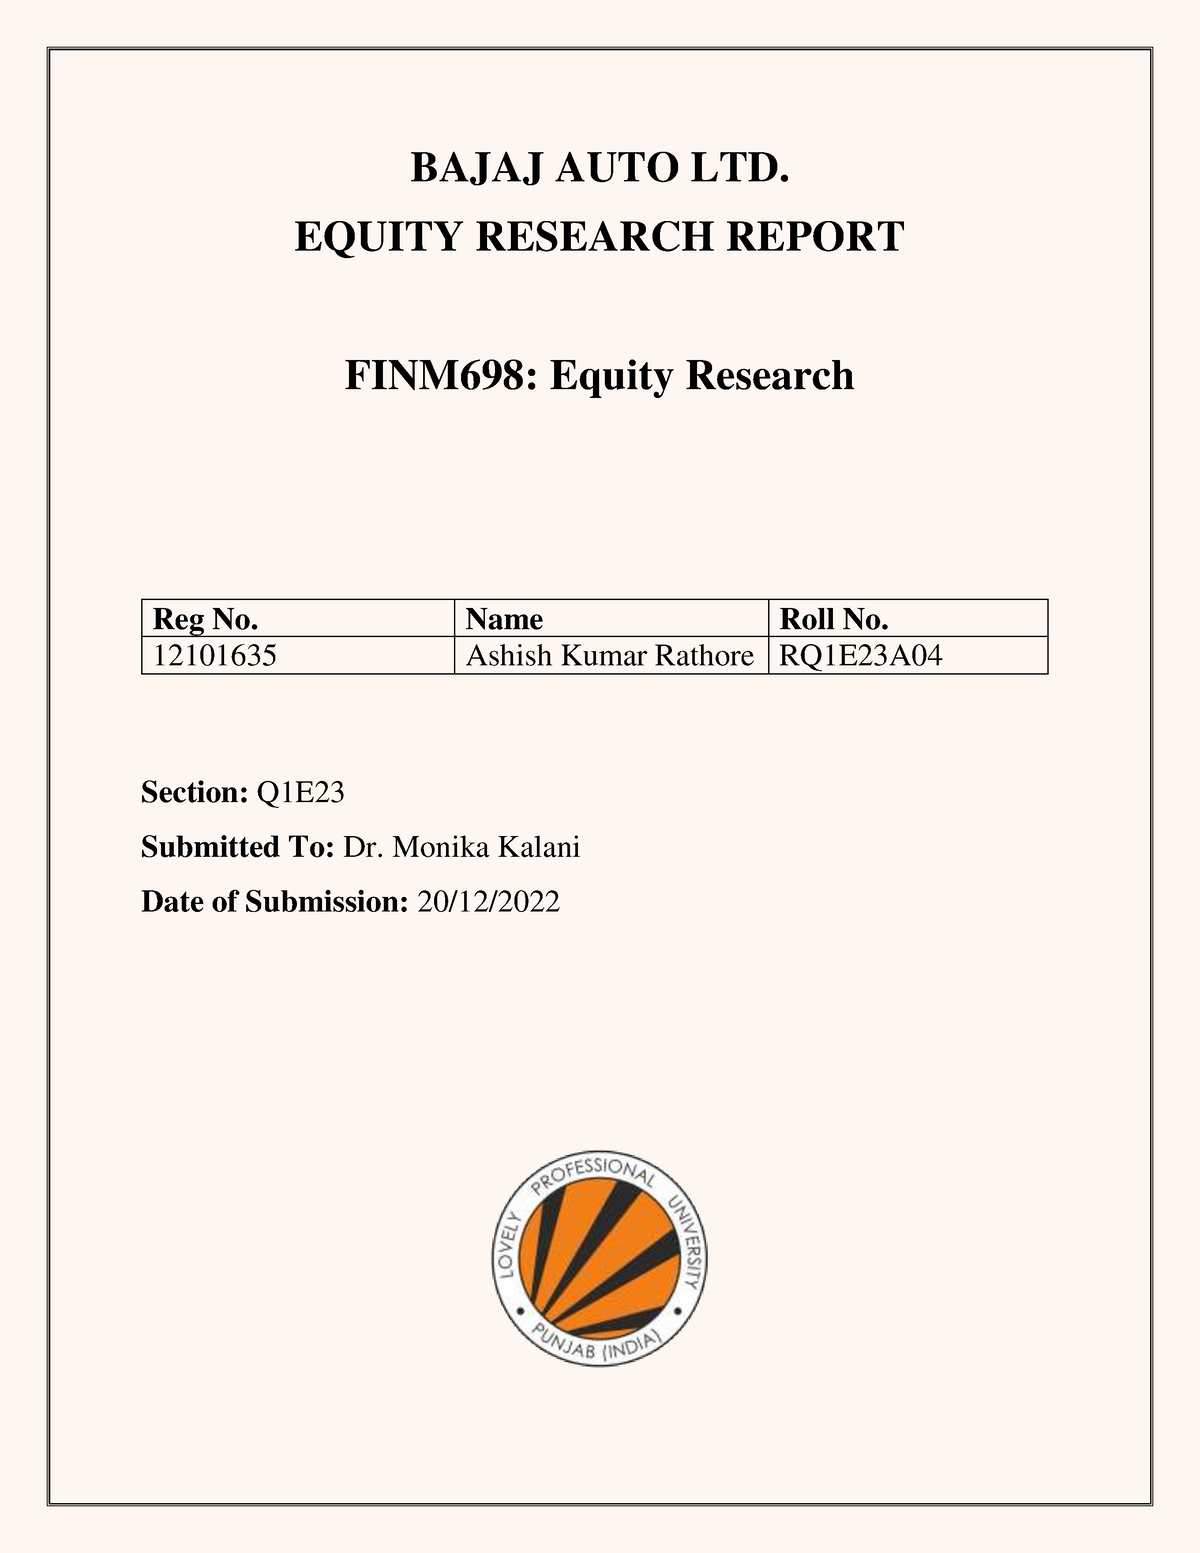 equity research report on bajaj finance